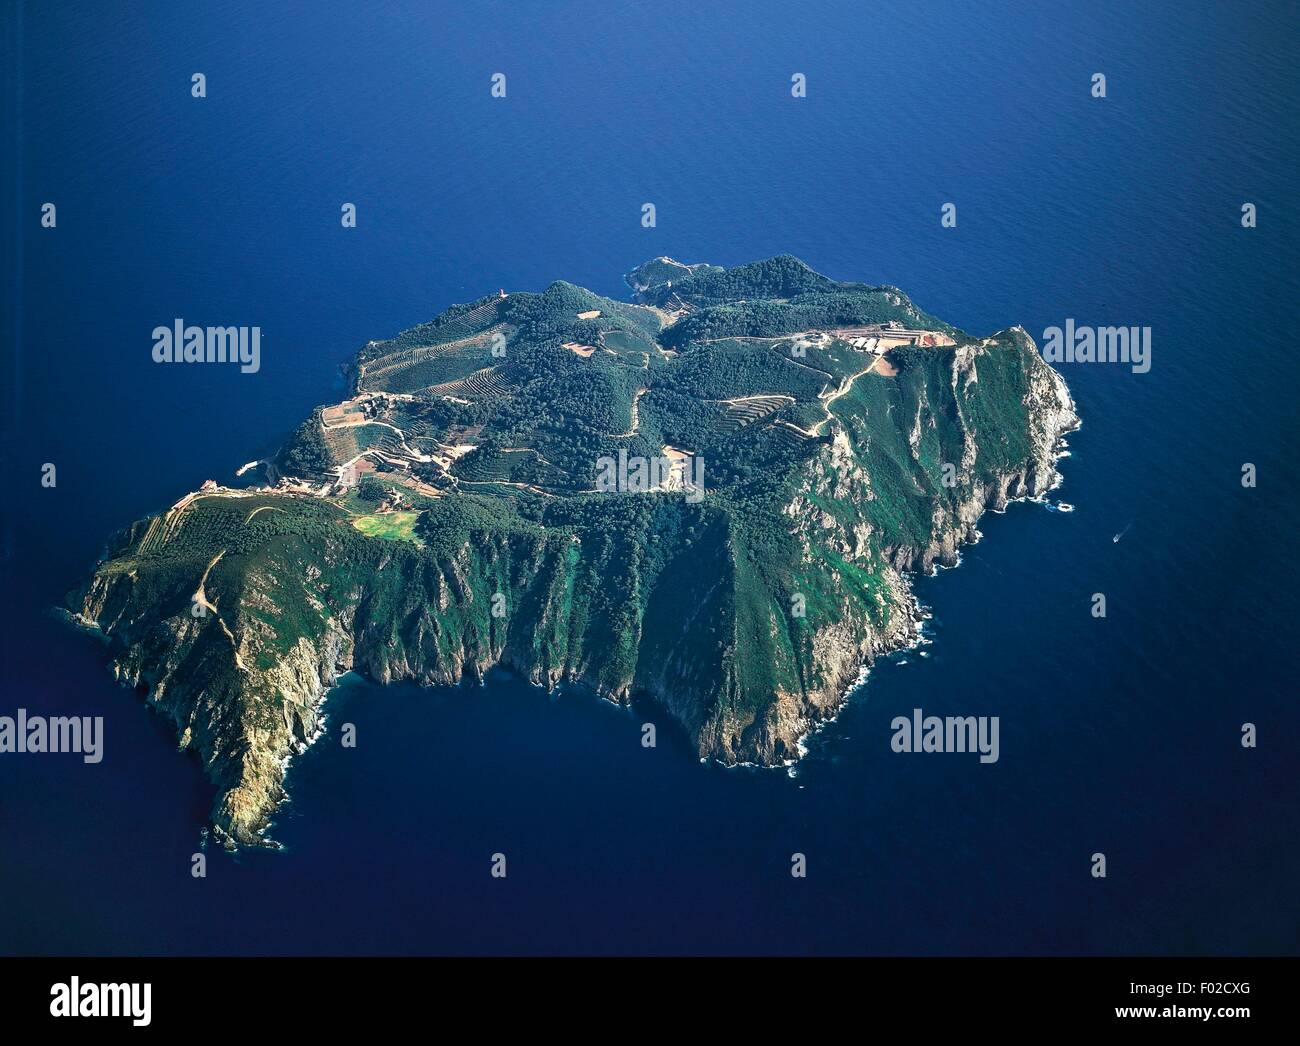 Luftaufnahme der Insel Gorgona - Nationalpark Toskanischen Archipels - Provinz von Livorno, Toskana Region, Italien Stockfoto